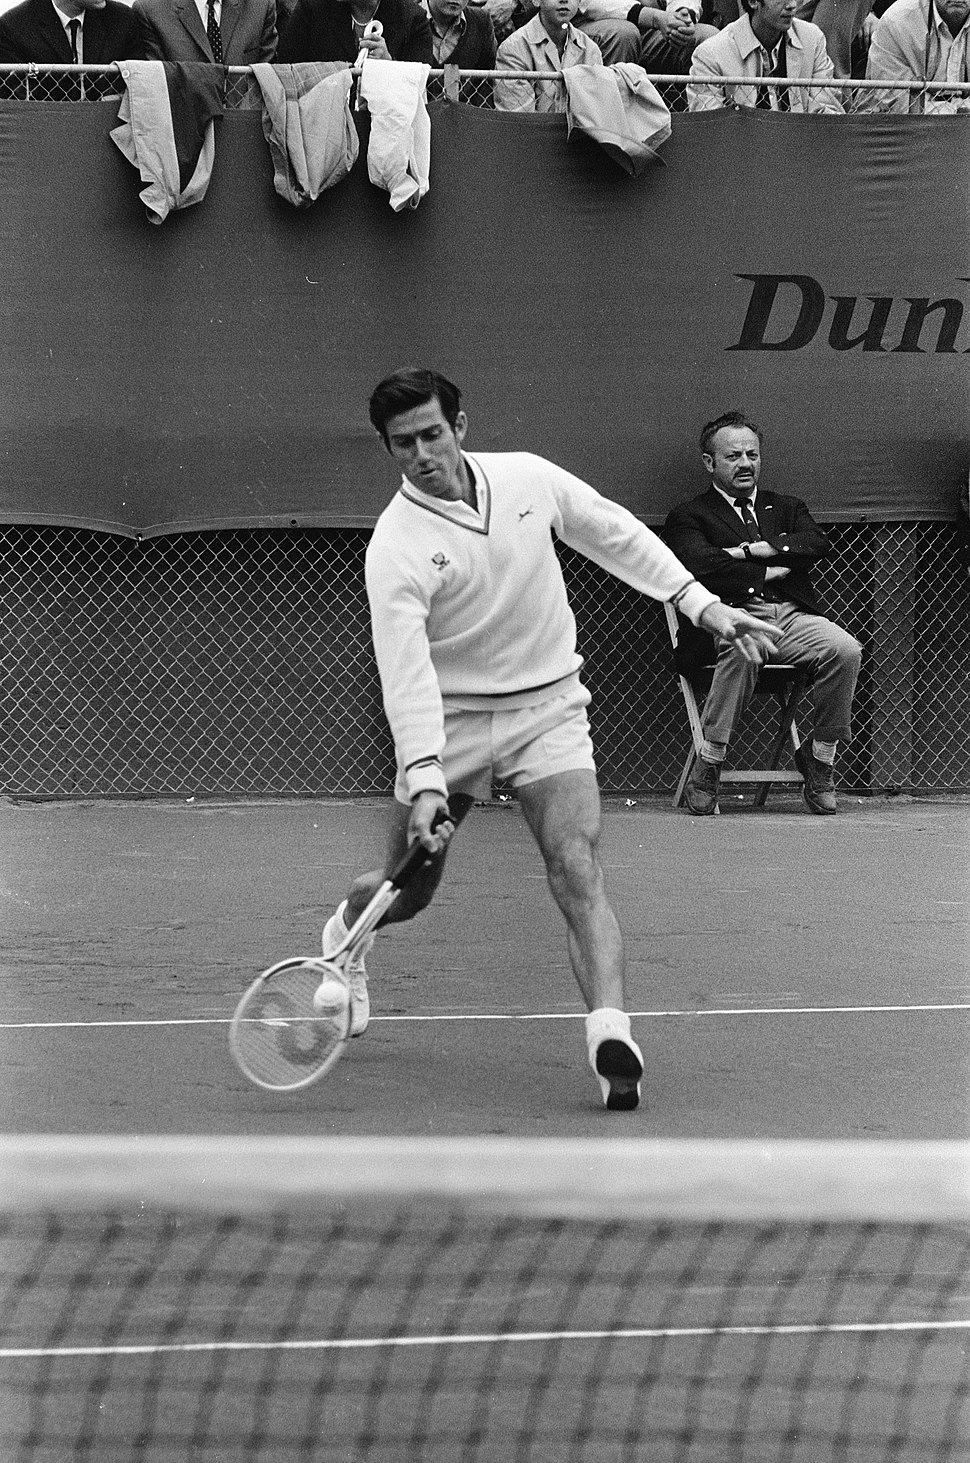 Ken Rosewall playing tennis